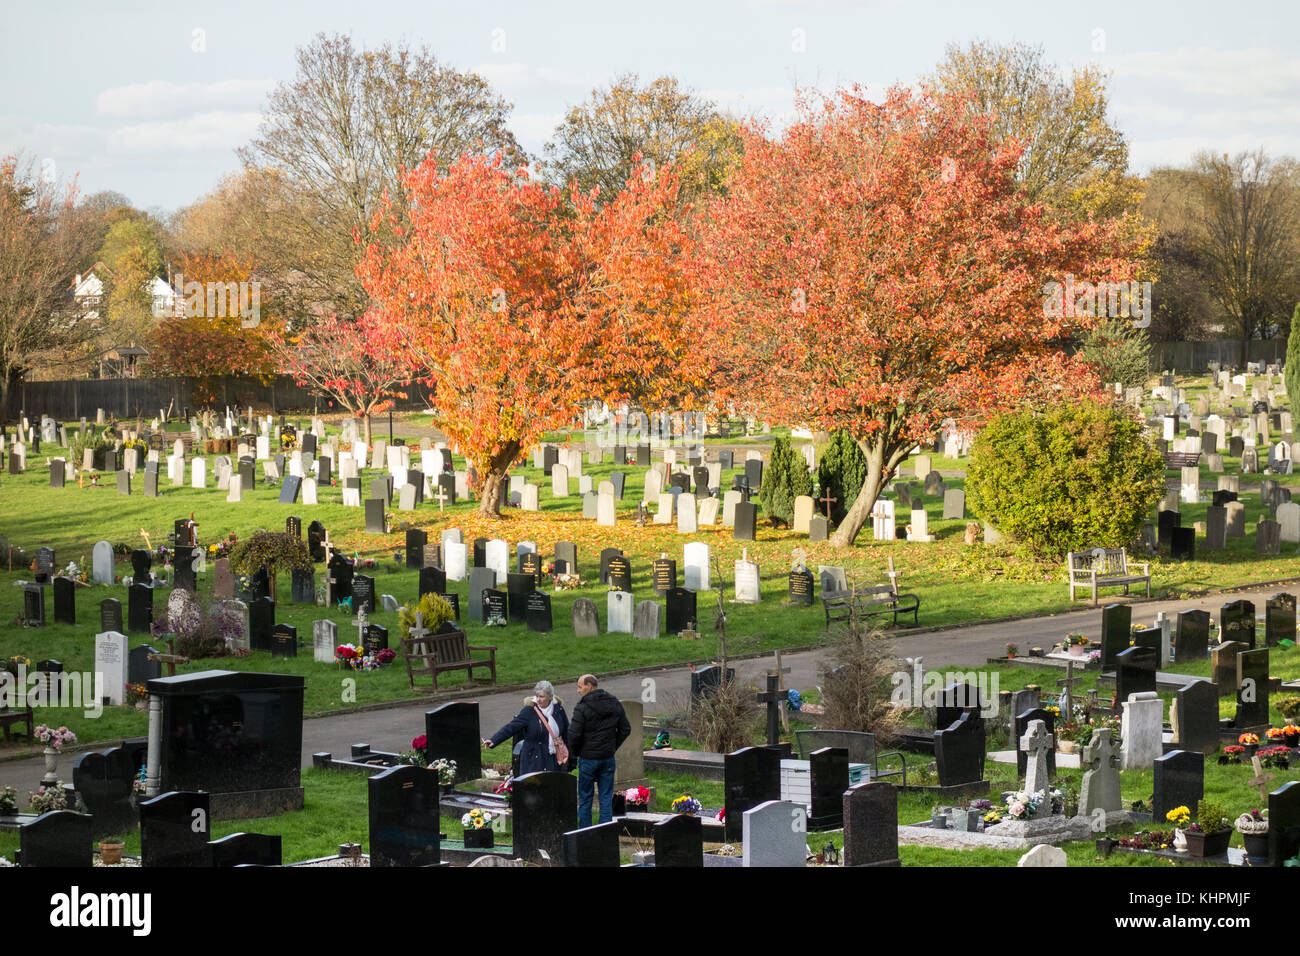 Chiswick nouveau cimetière, Staveley Road, Ealing, London, UK Banque D'Images